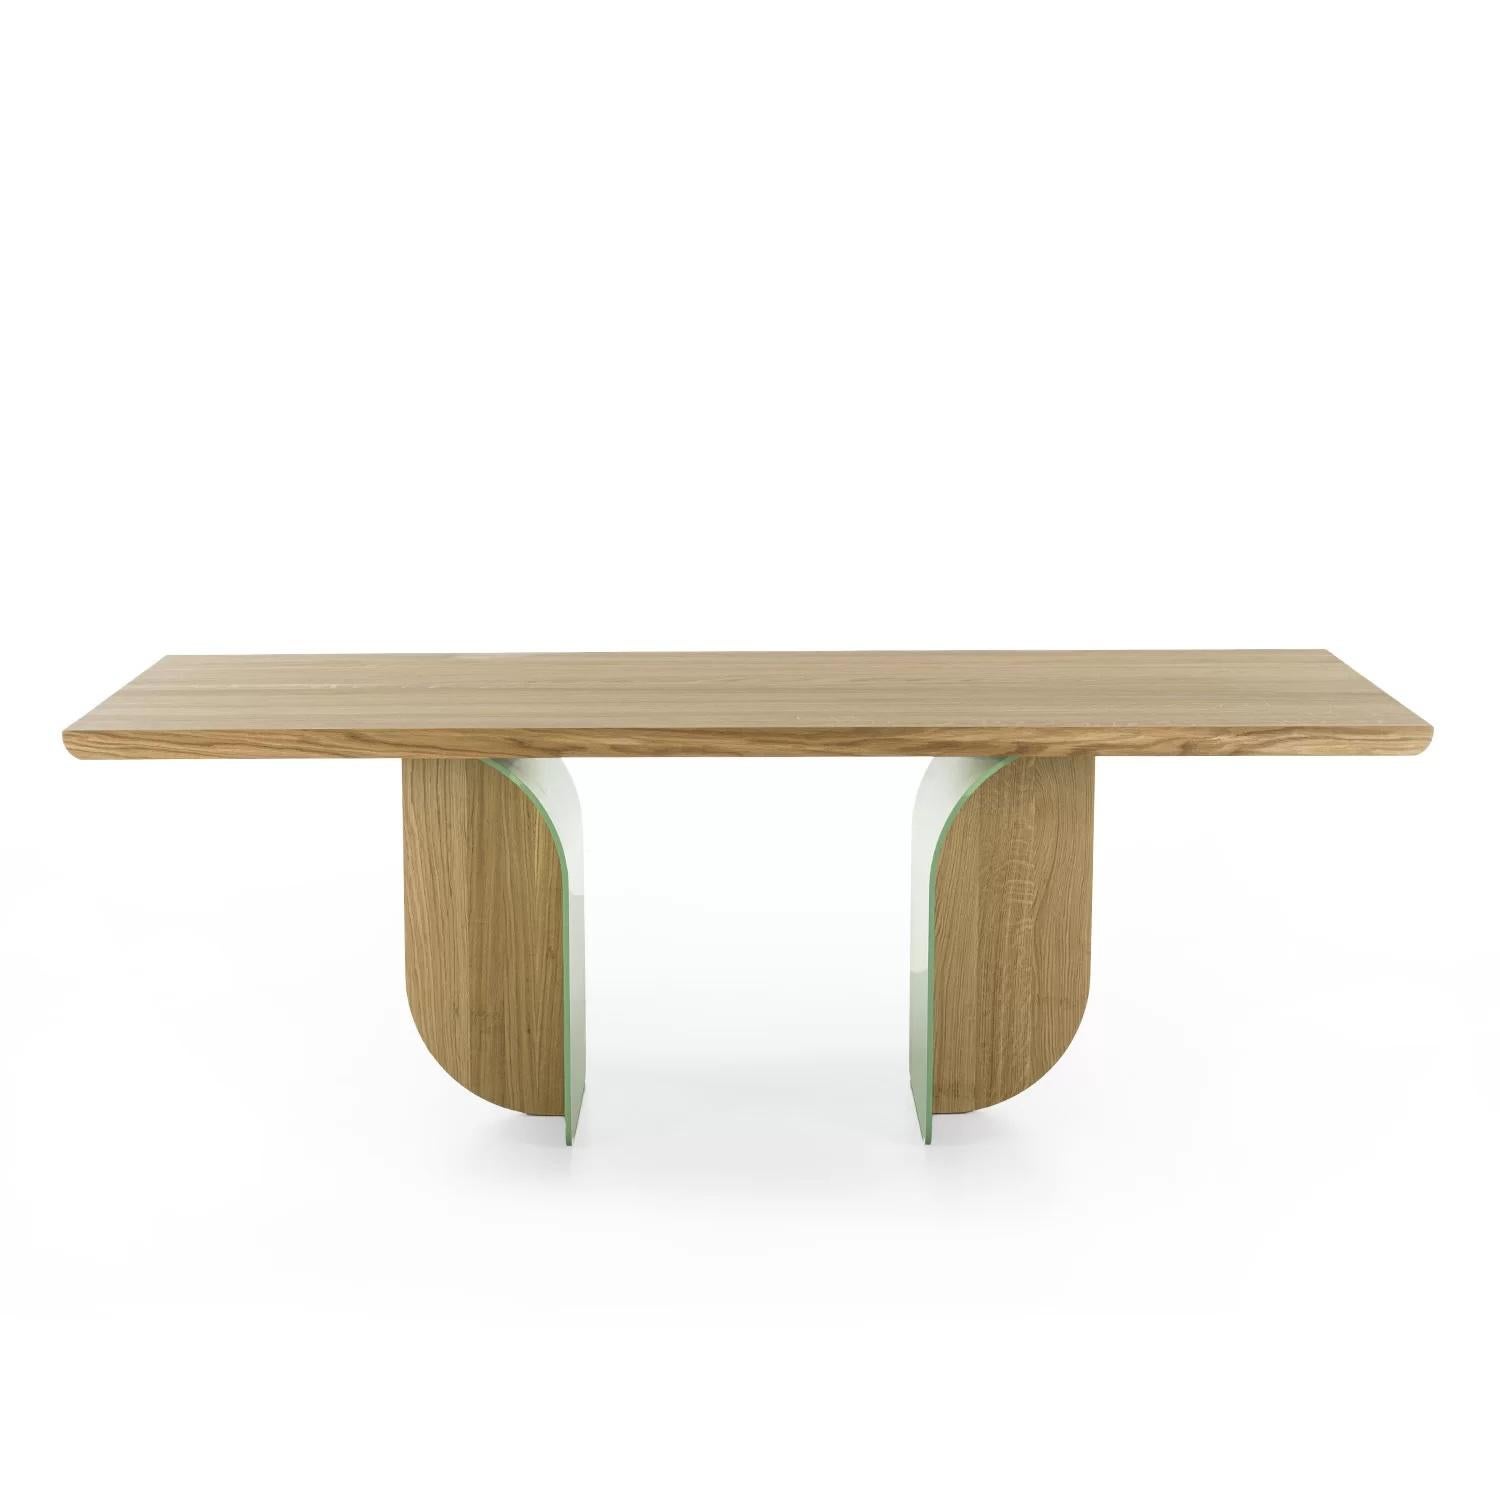 Tisch mit einer Massivholzplatte mit verleimten Leisten, mit abgerundeten Ecken, gekennzeichnet durch seine Beine, die aus der Verbindung von Eisen und Holz entstanden sind und je nach Blickwinkel unterschiedlich aussehen.

Erhältlich in